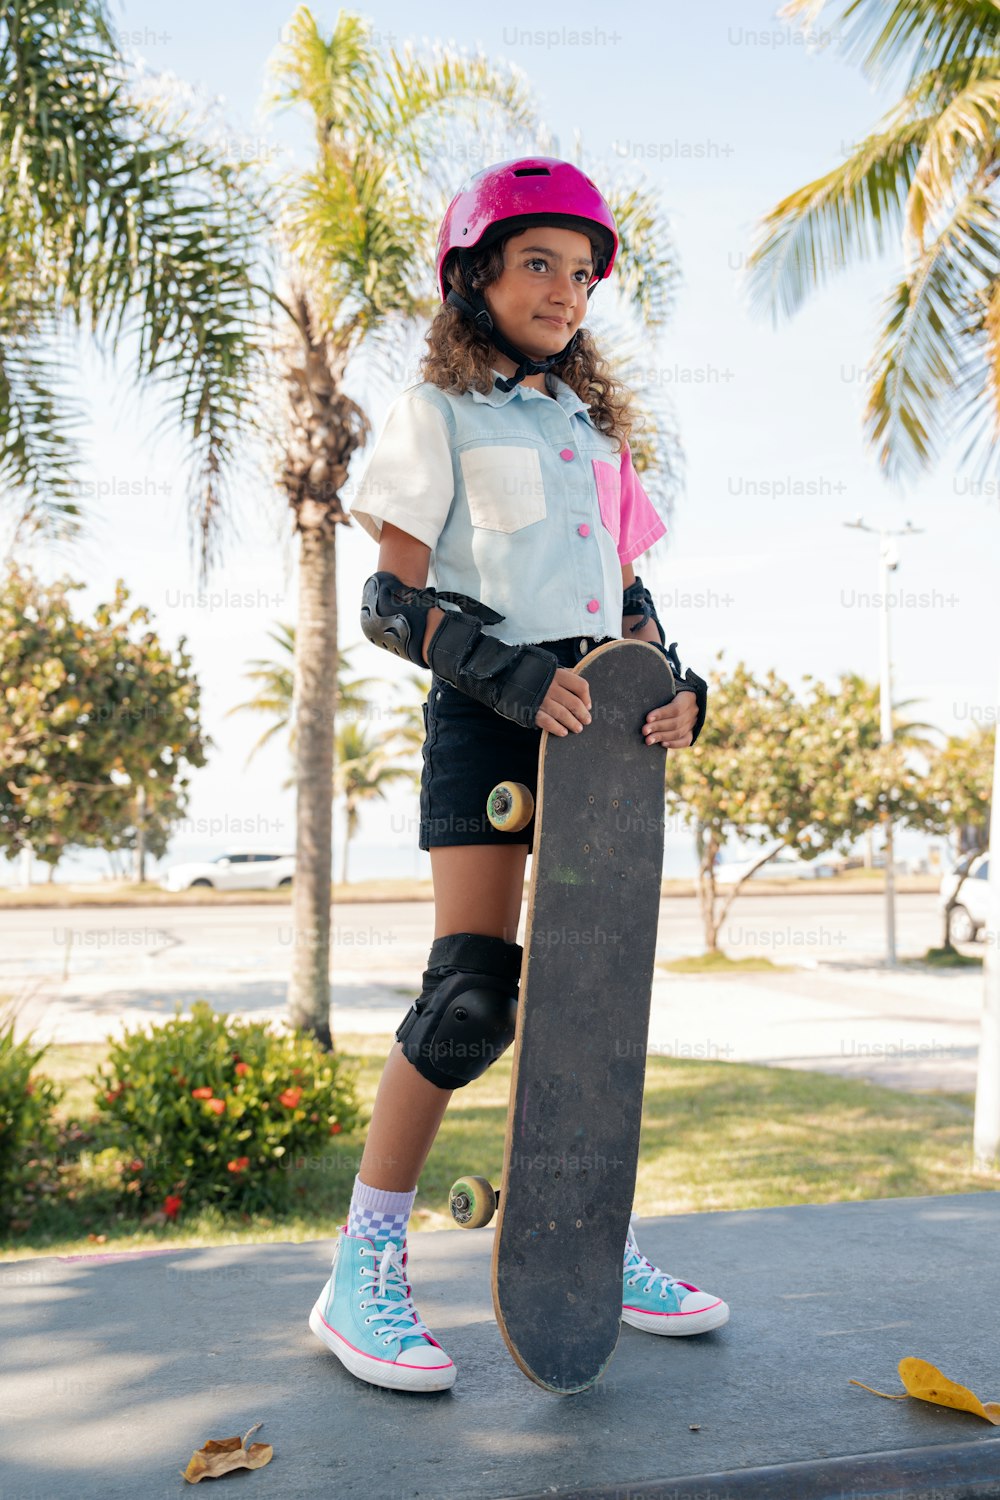 uma jovem segurando um skate em uma calçada